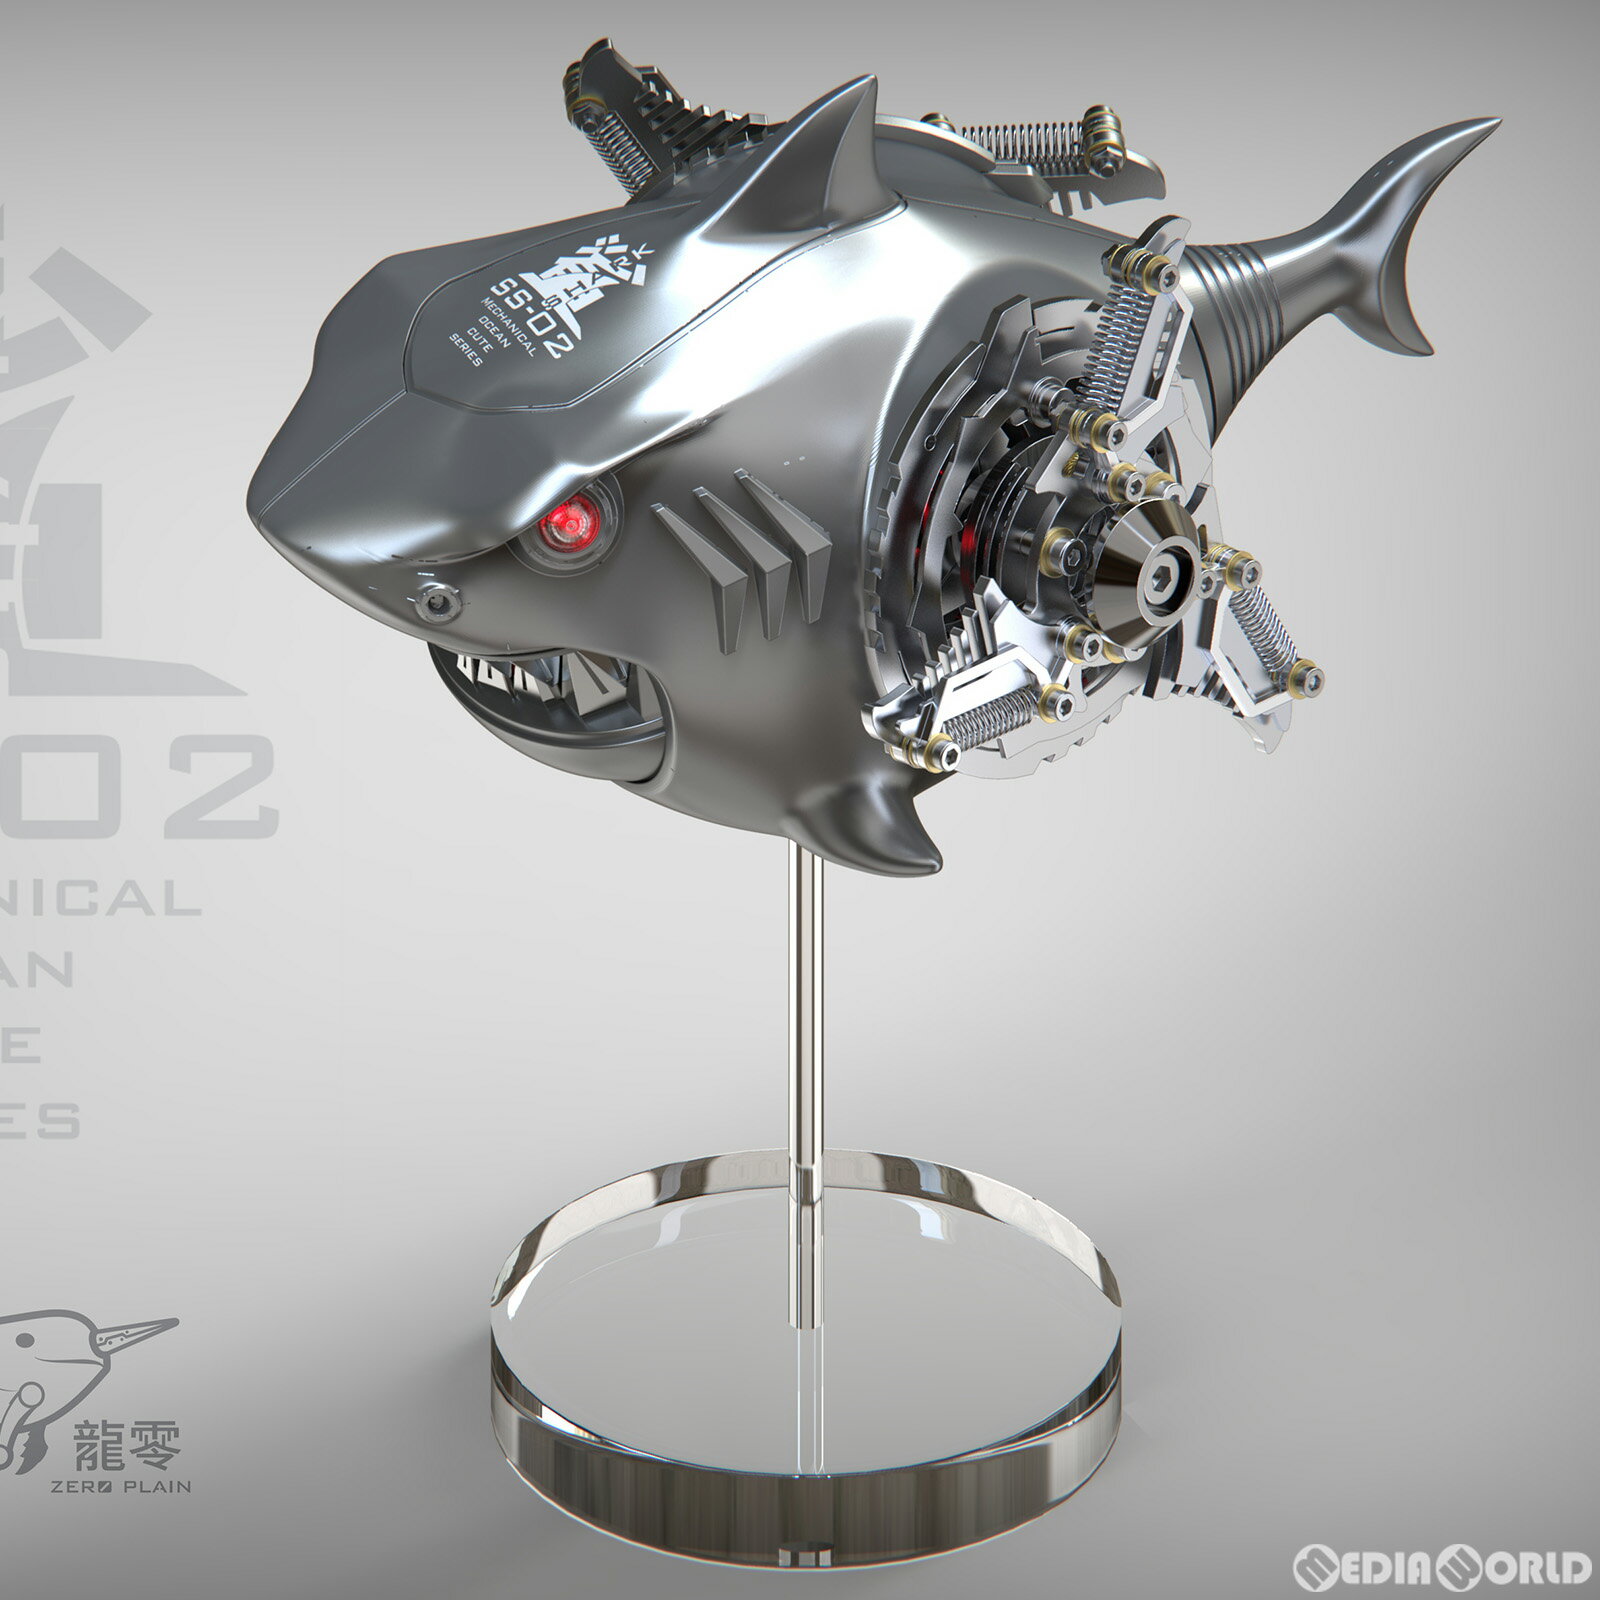 【中古】[FIG]ZERO PLAIN メカニカル・オーシャン・キュート SS-02B 鮫(サメ) シルバー コレクションフィギュア 模道空間 SAYING ZONE(セーイング・ゾーン)(20230326)